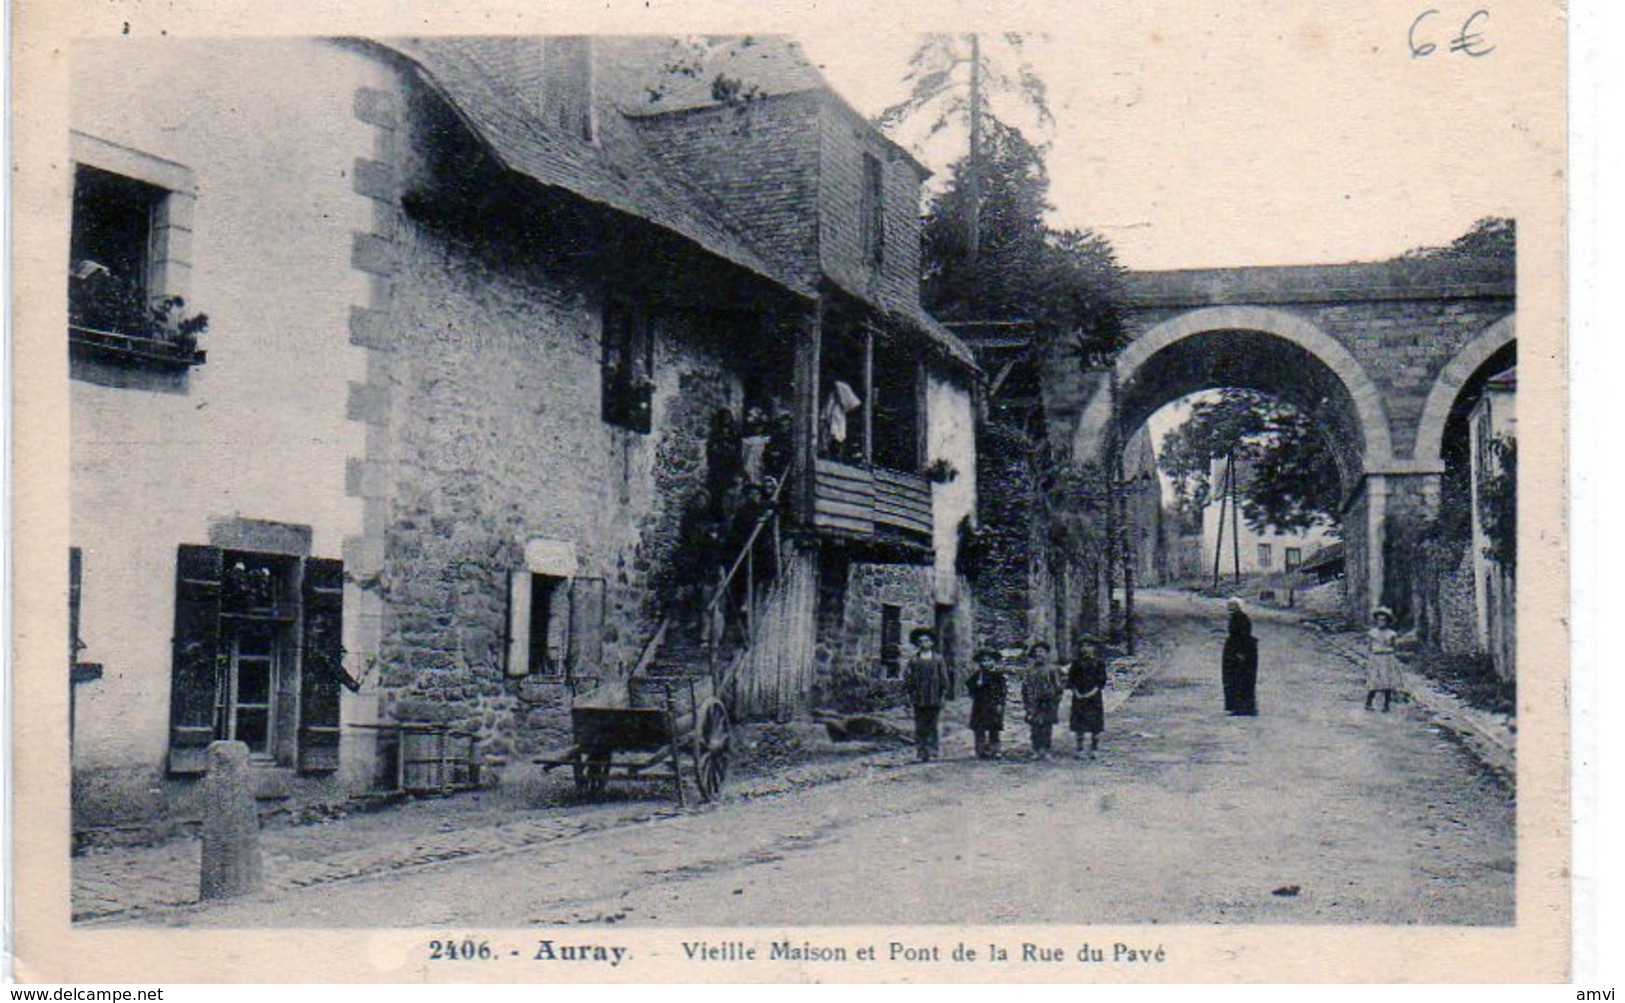 3904 56 -  AURAY - Vieille Maison Et Pont De La Rue Du Pavé - Paire Semeuse 1937 Cachet Carré Auray Sa Riviere - Auray